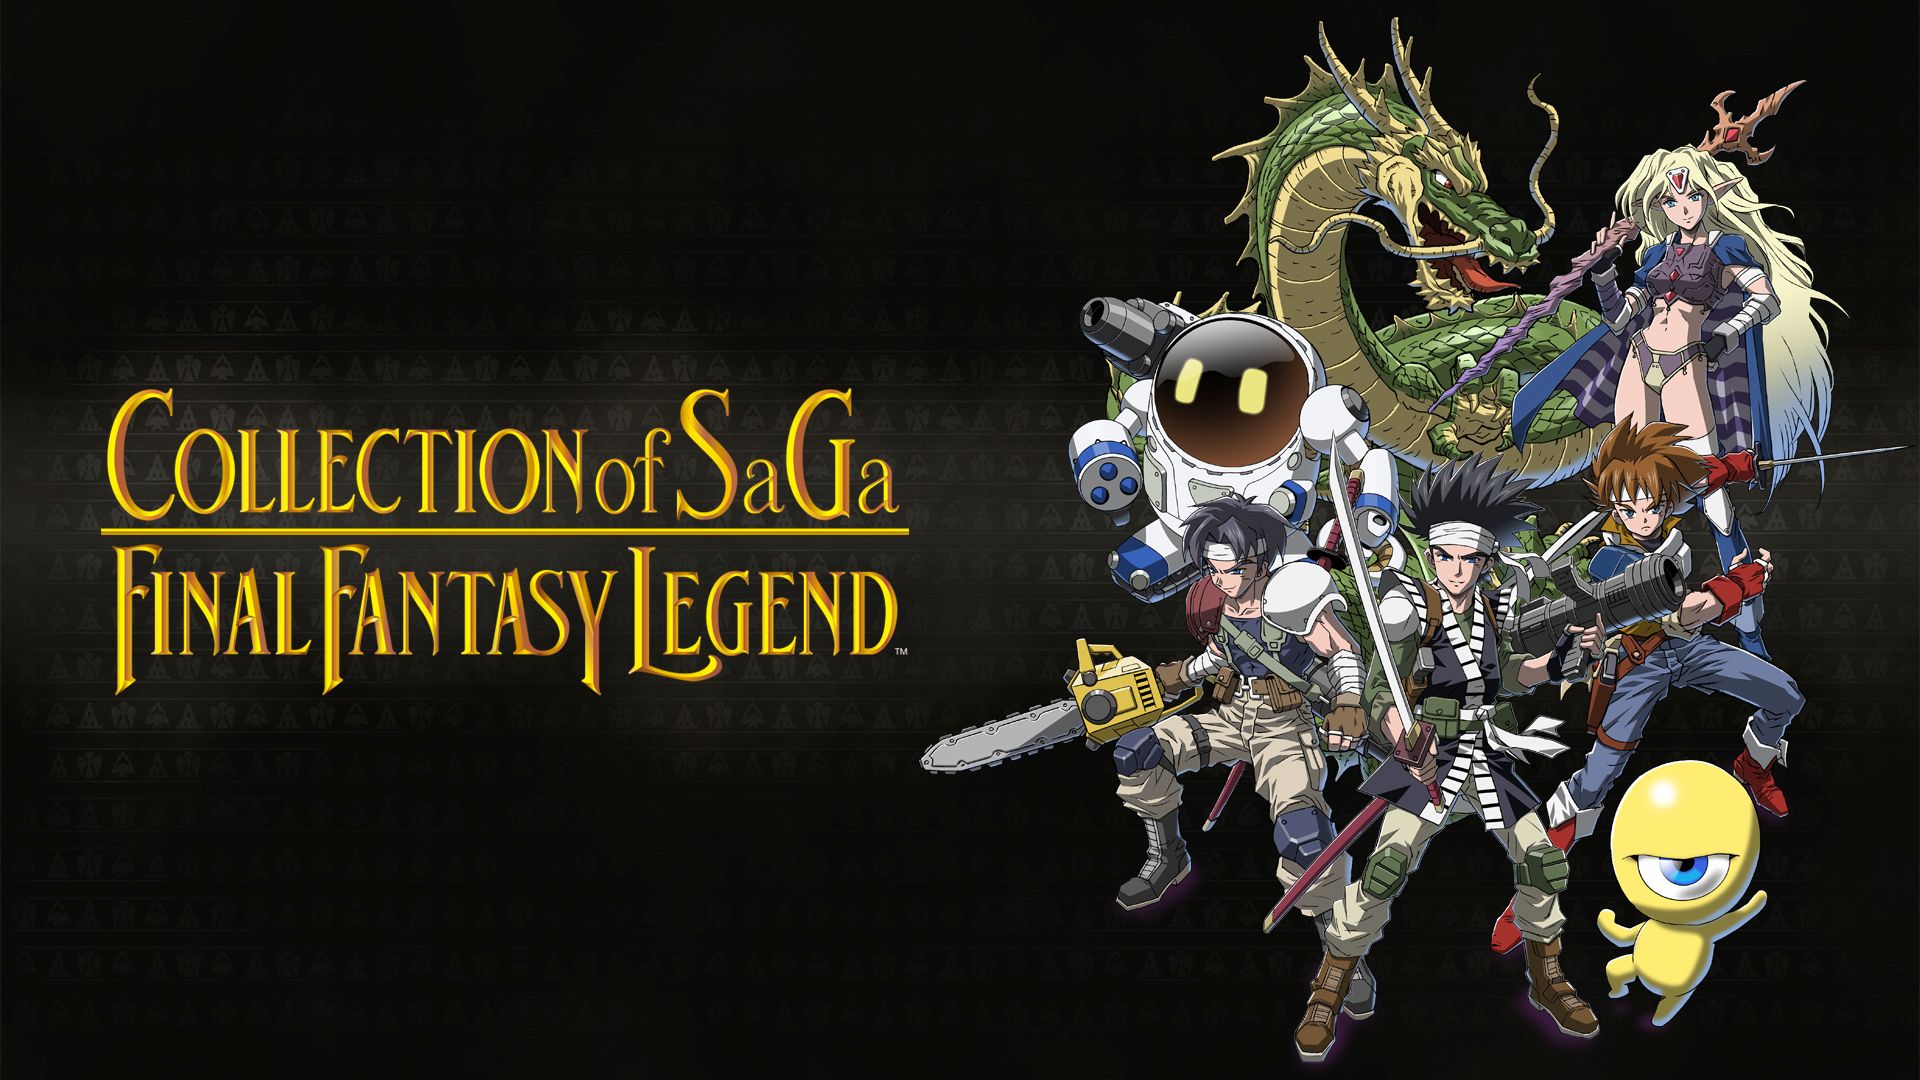 Col·lecció de Saga Final Fantasy Legend